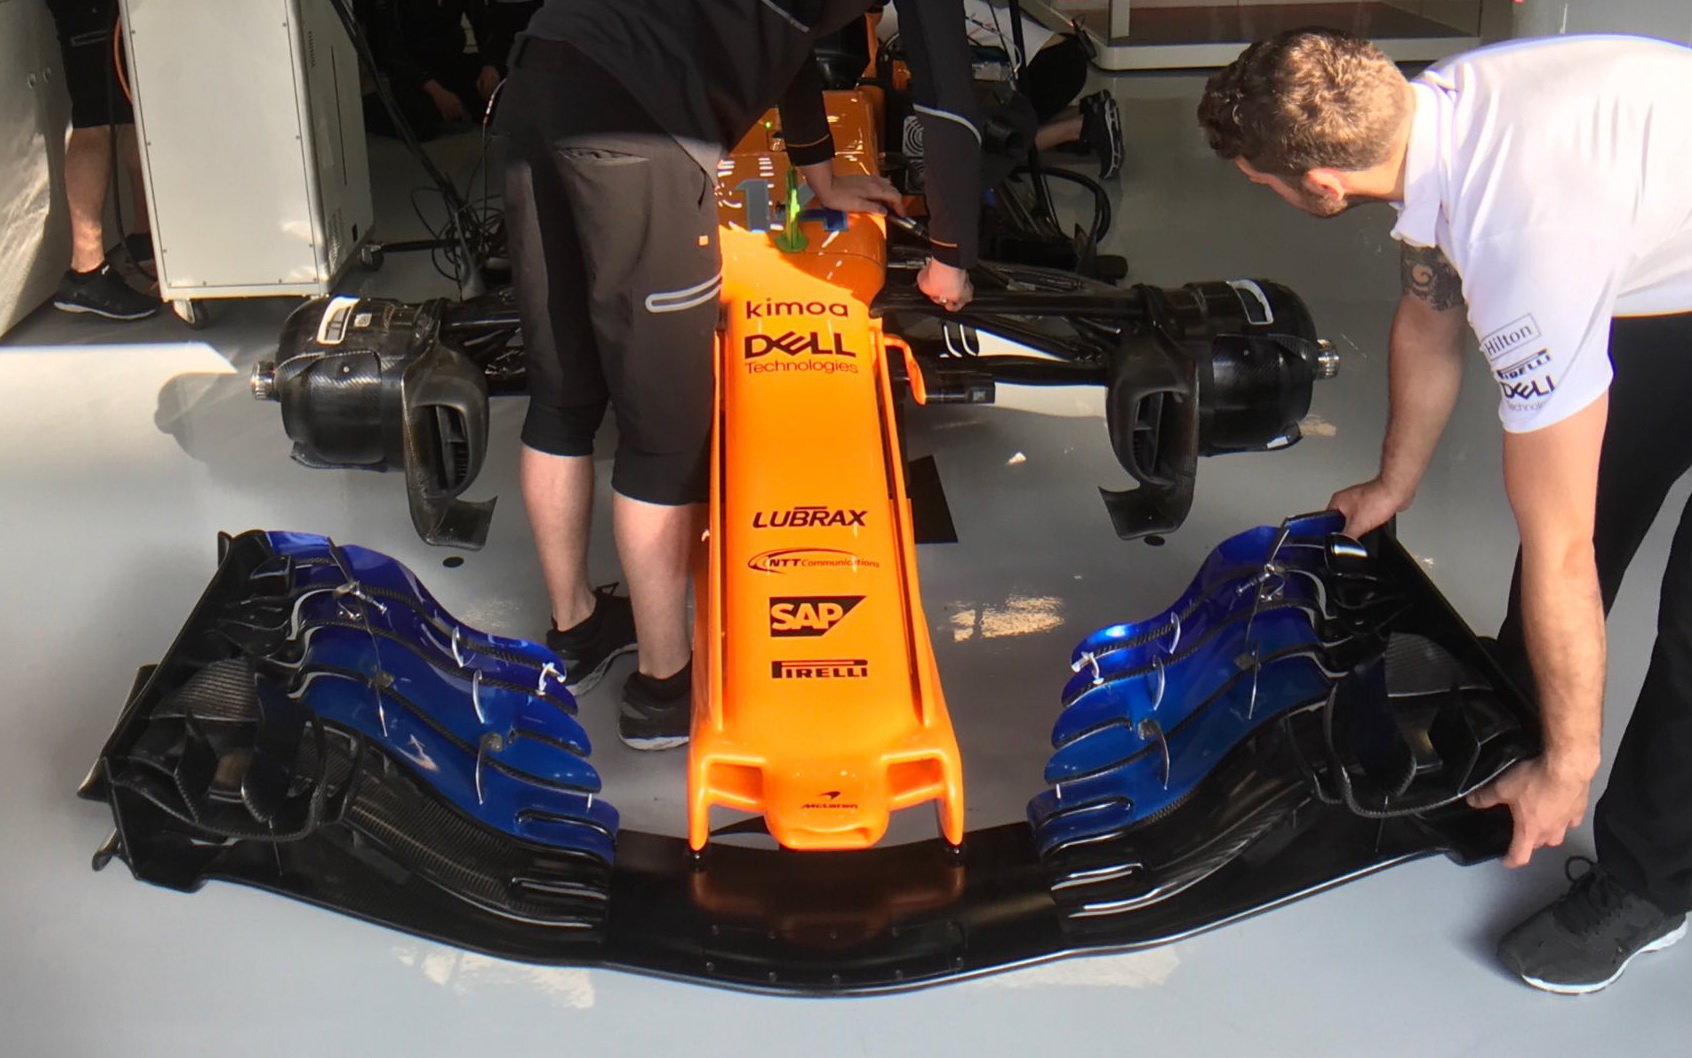 Nové přední křídlo pro vůz McLaren je ve Španělsku